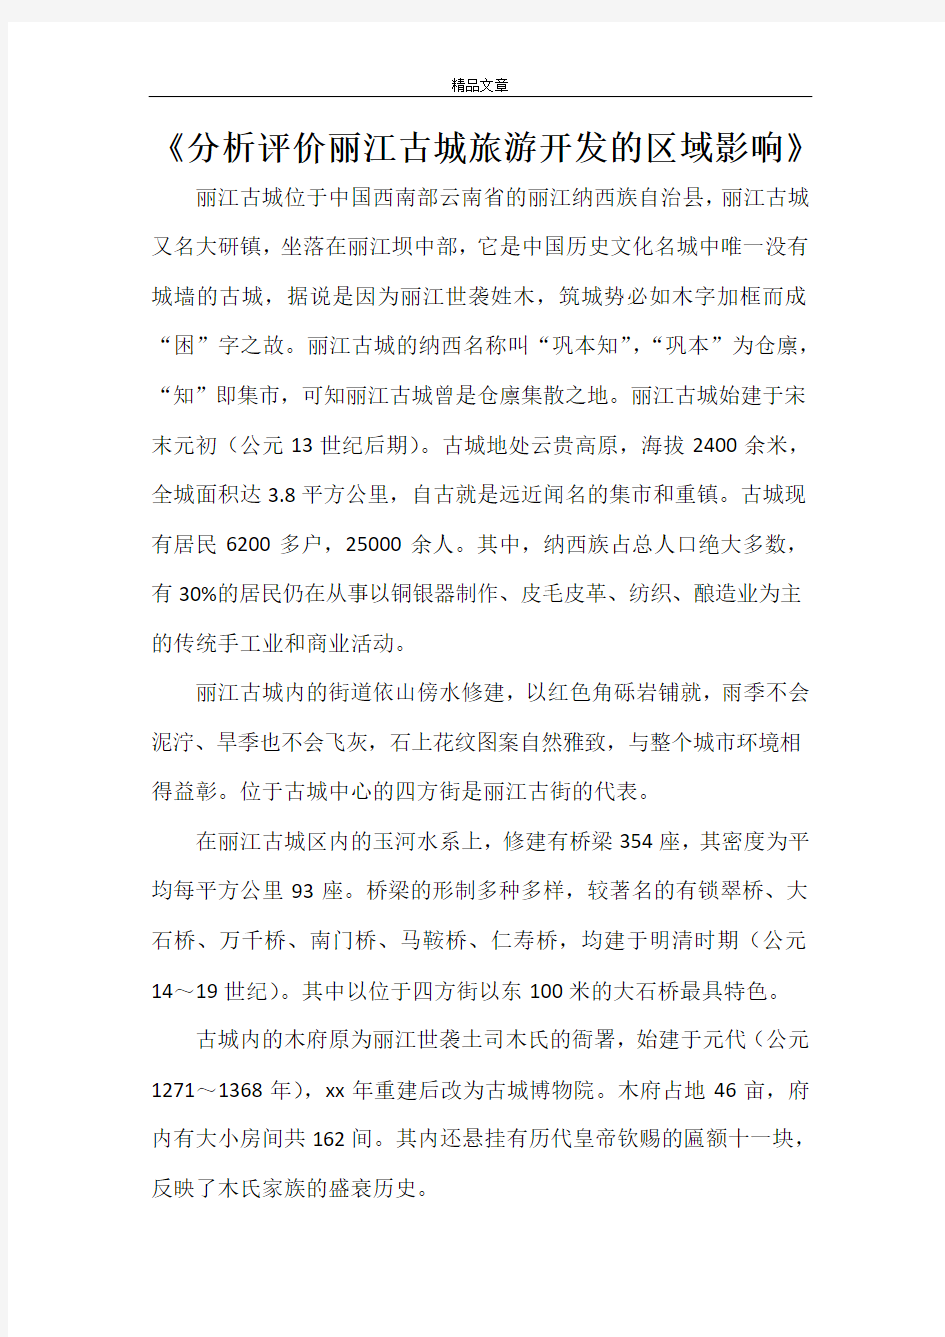 《分析评价丽江古城旅游开发的区域影响》